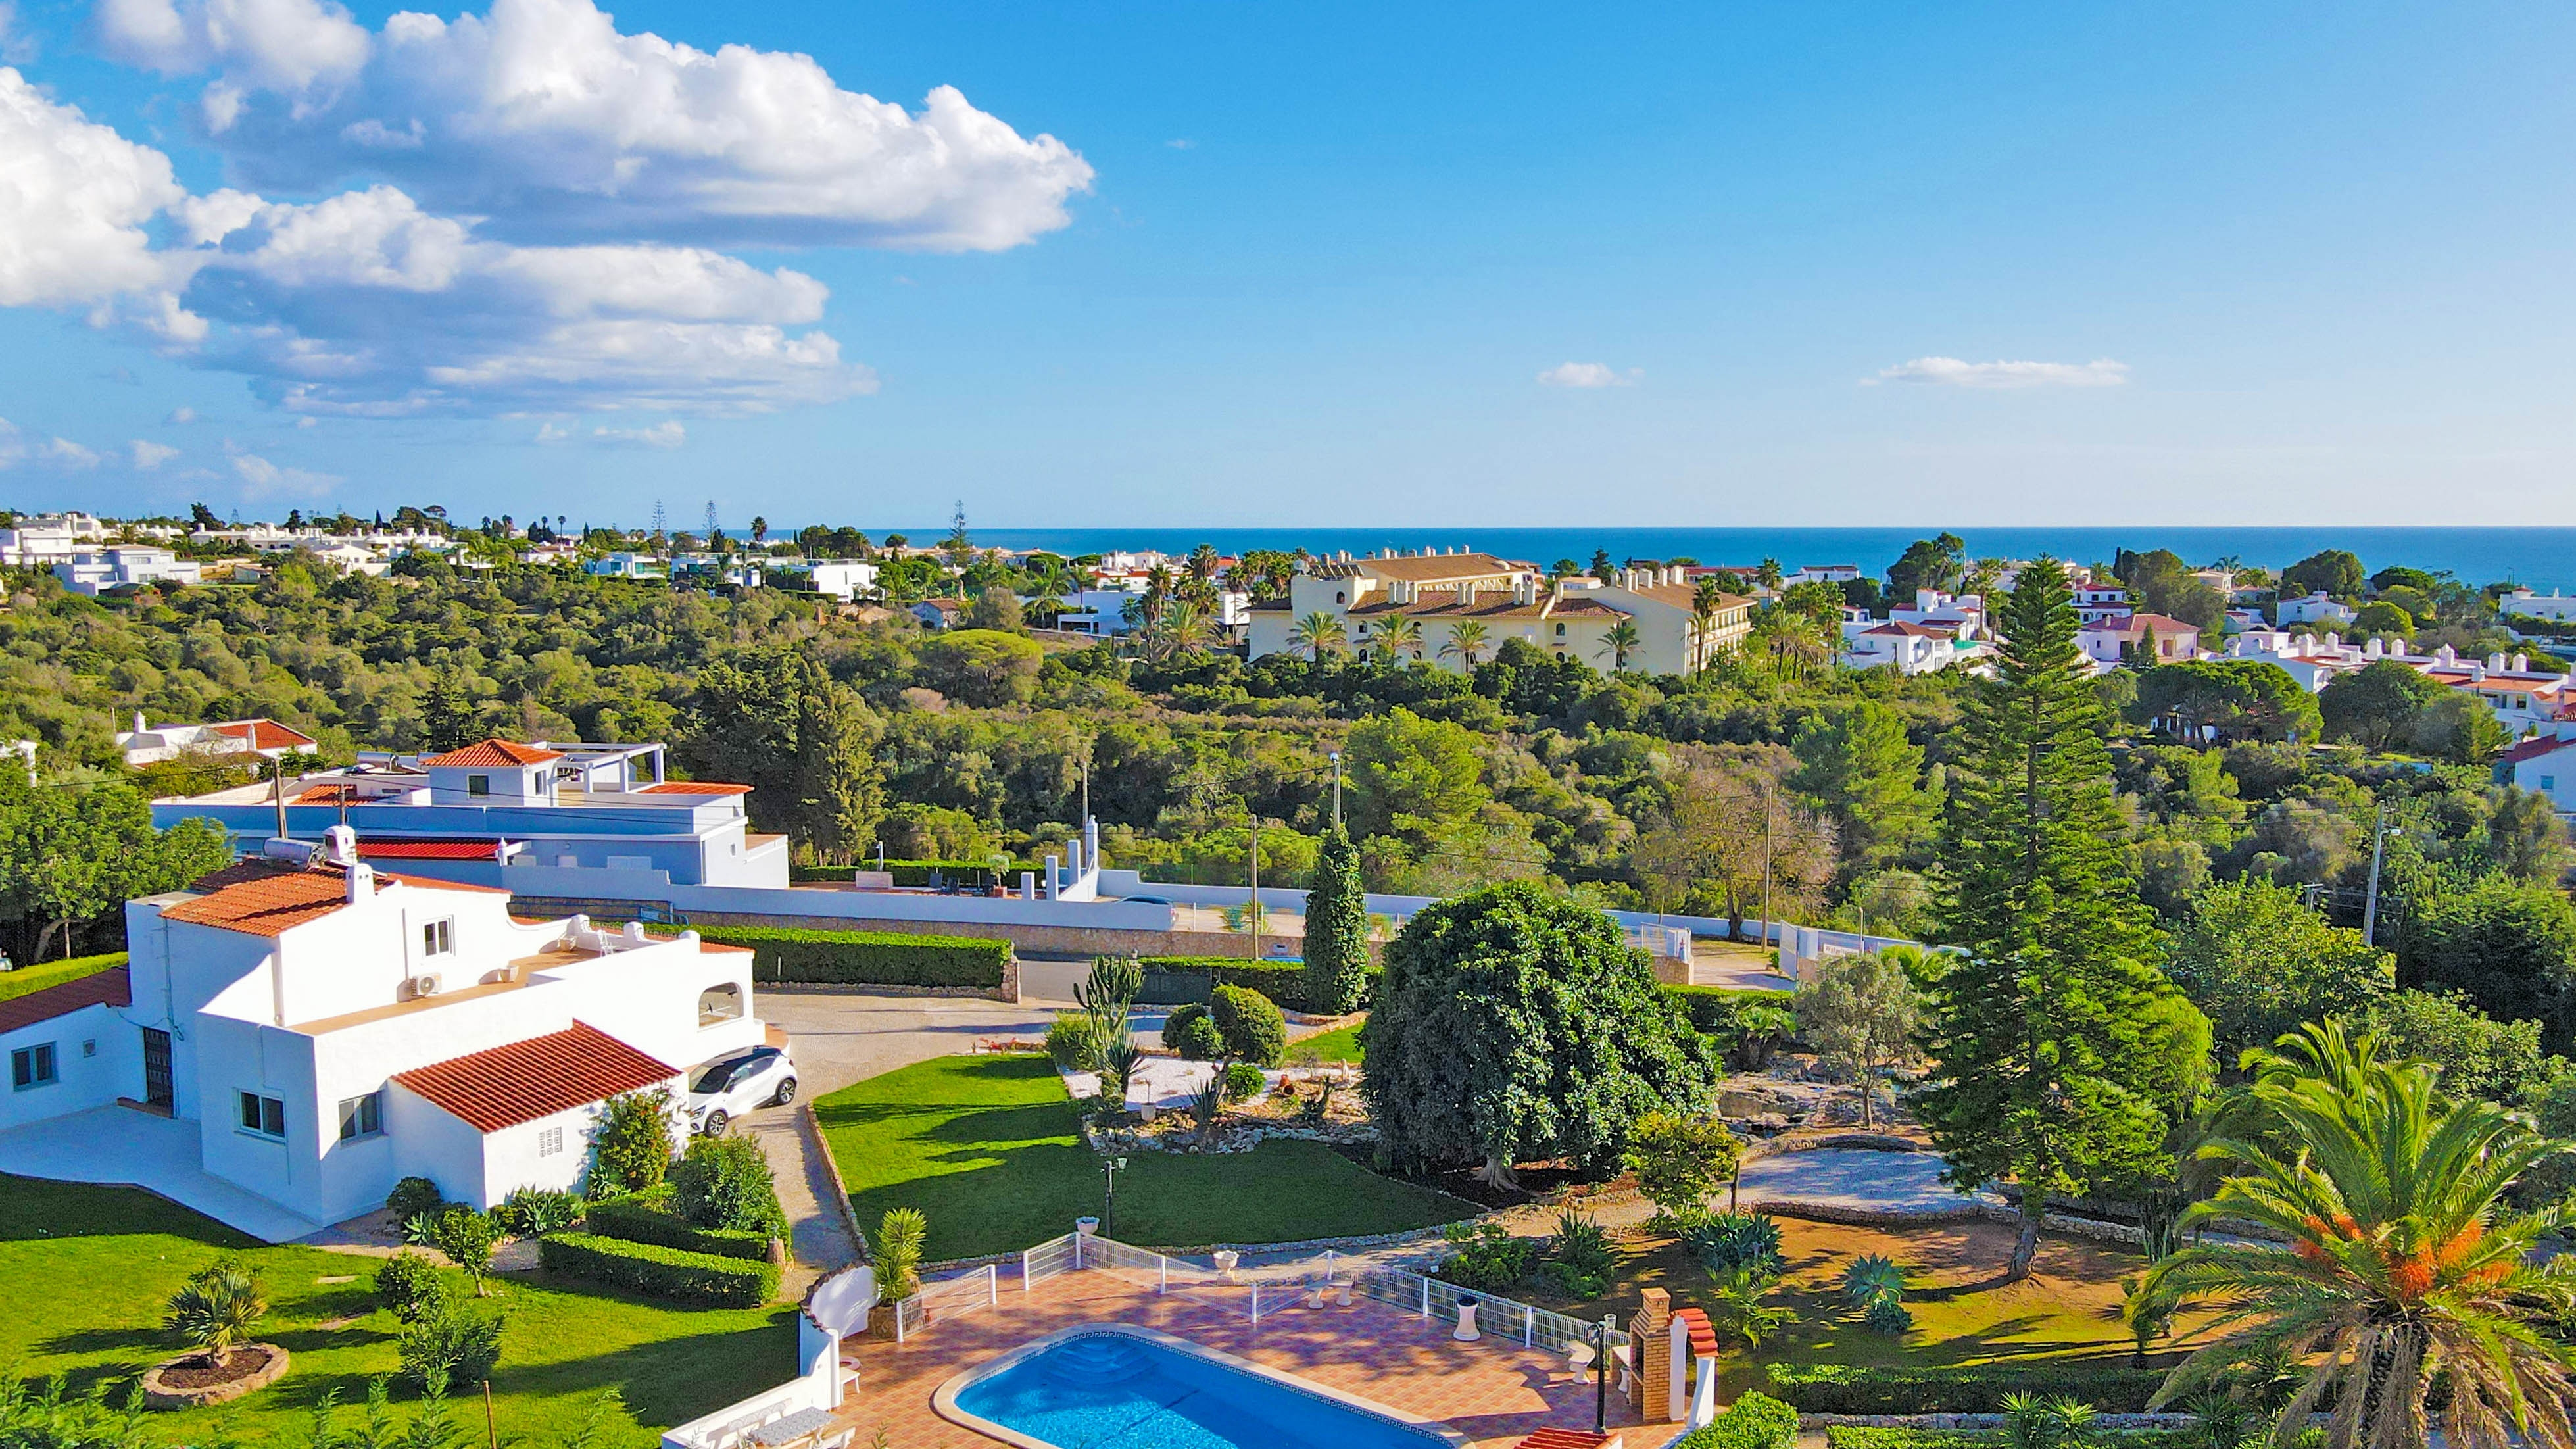 Fantástica moradia renovada com 4 quartos e piscina privada, Lagoa, Algarve | PPP2229 Fantástica moradia renovada com 4 quartos e uma piscina privada numa excelente localização.